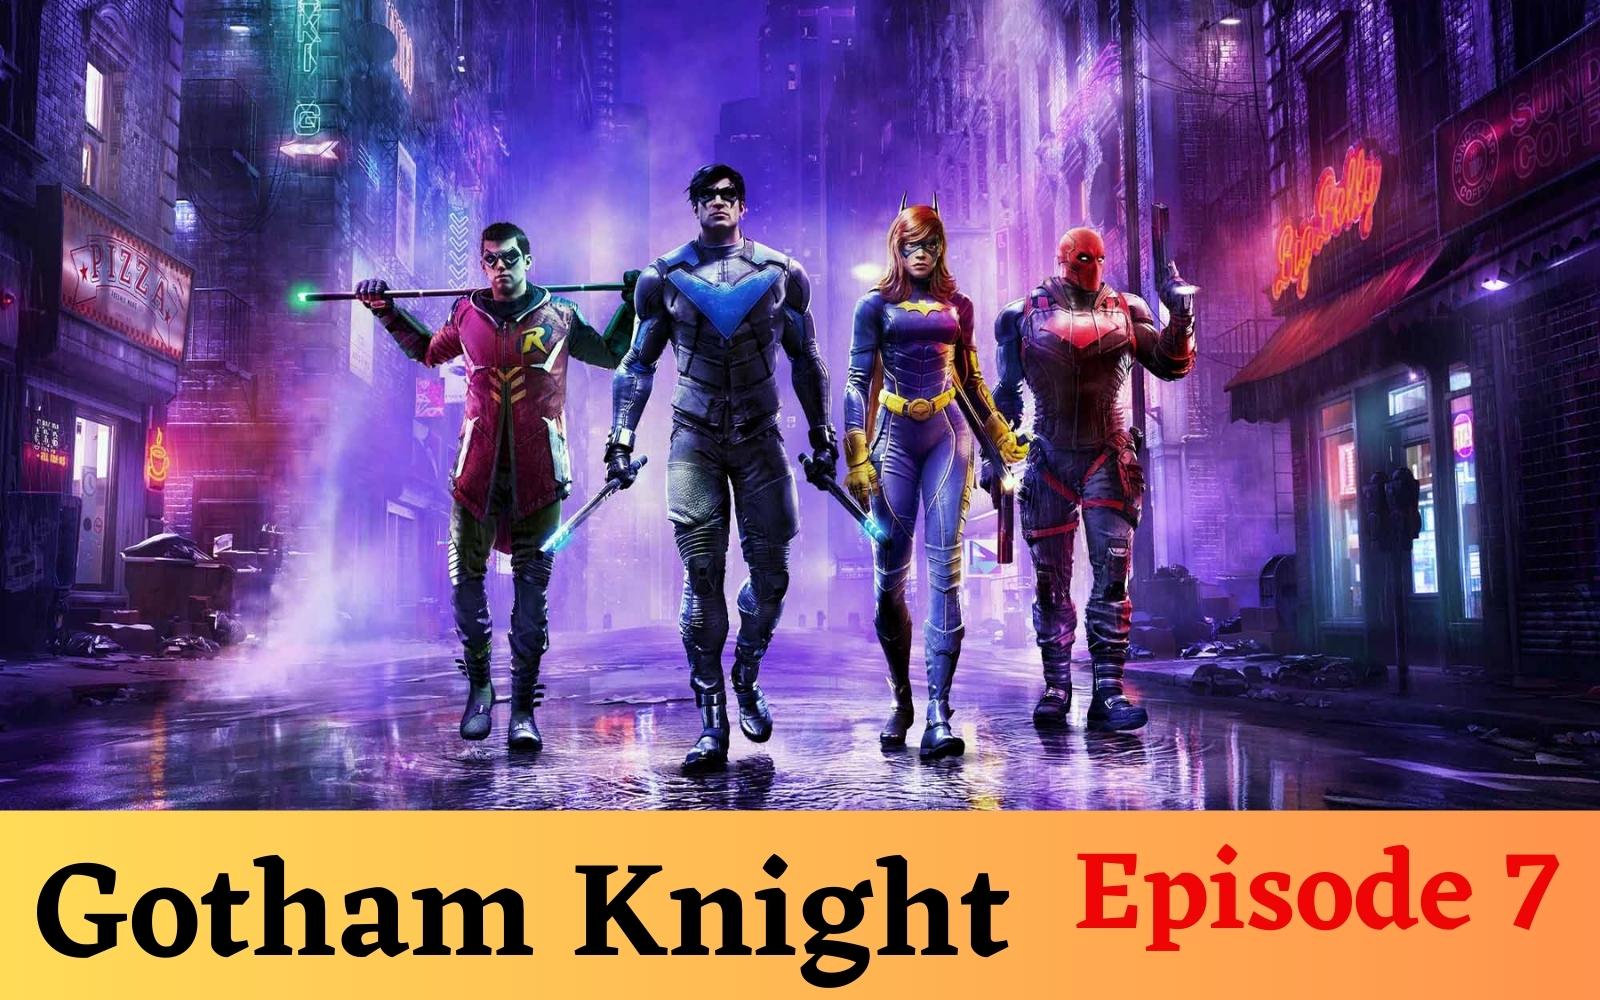 Gotham Knight Episode 7 Release Date